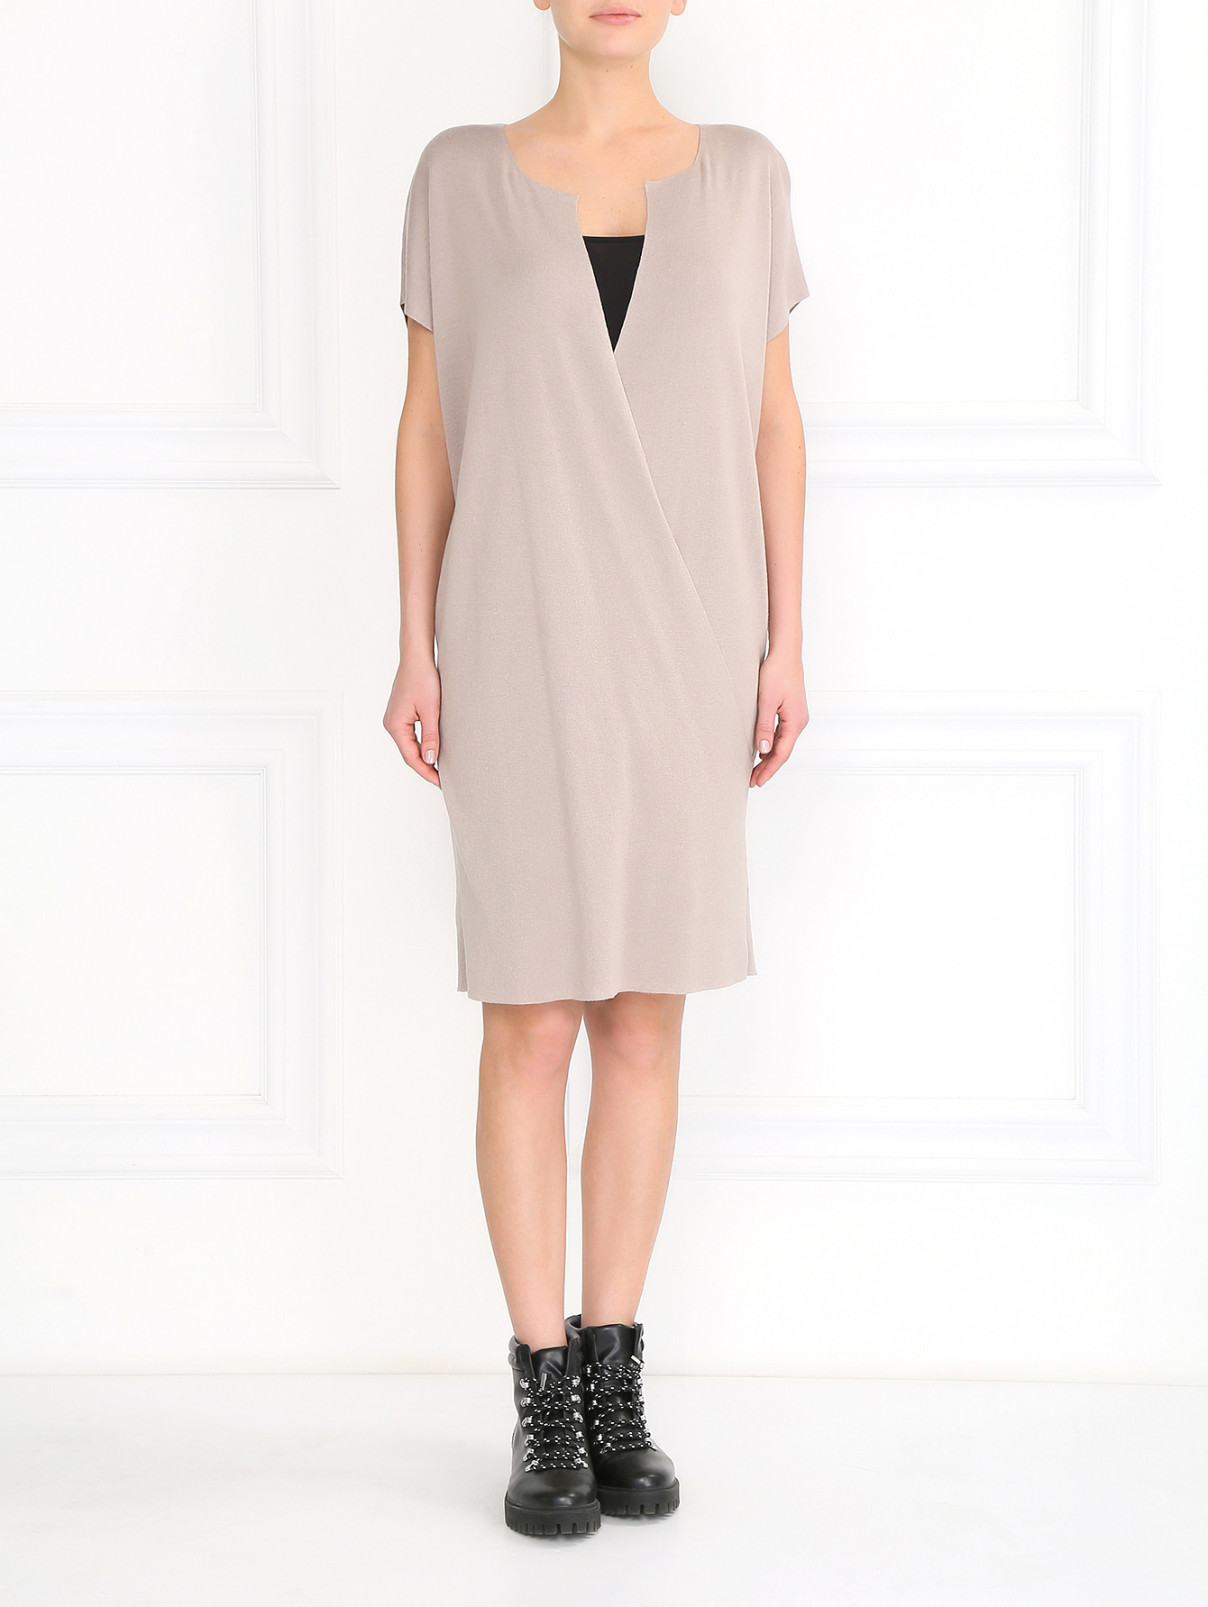 Платье из шелка и льна Jil Sander  –  Модель Общий вид  – Цвет:  Серый